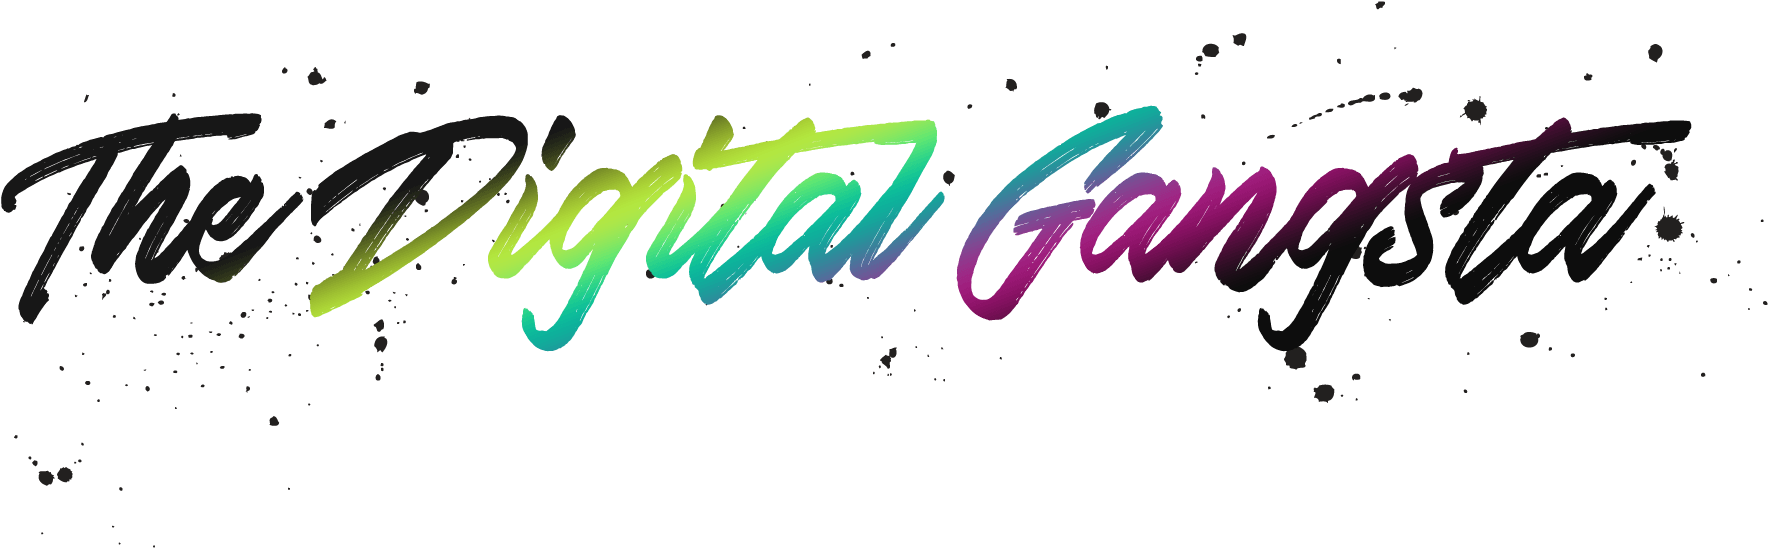 The Digital Gangsta Logo